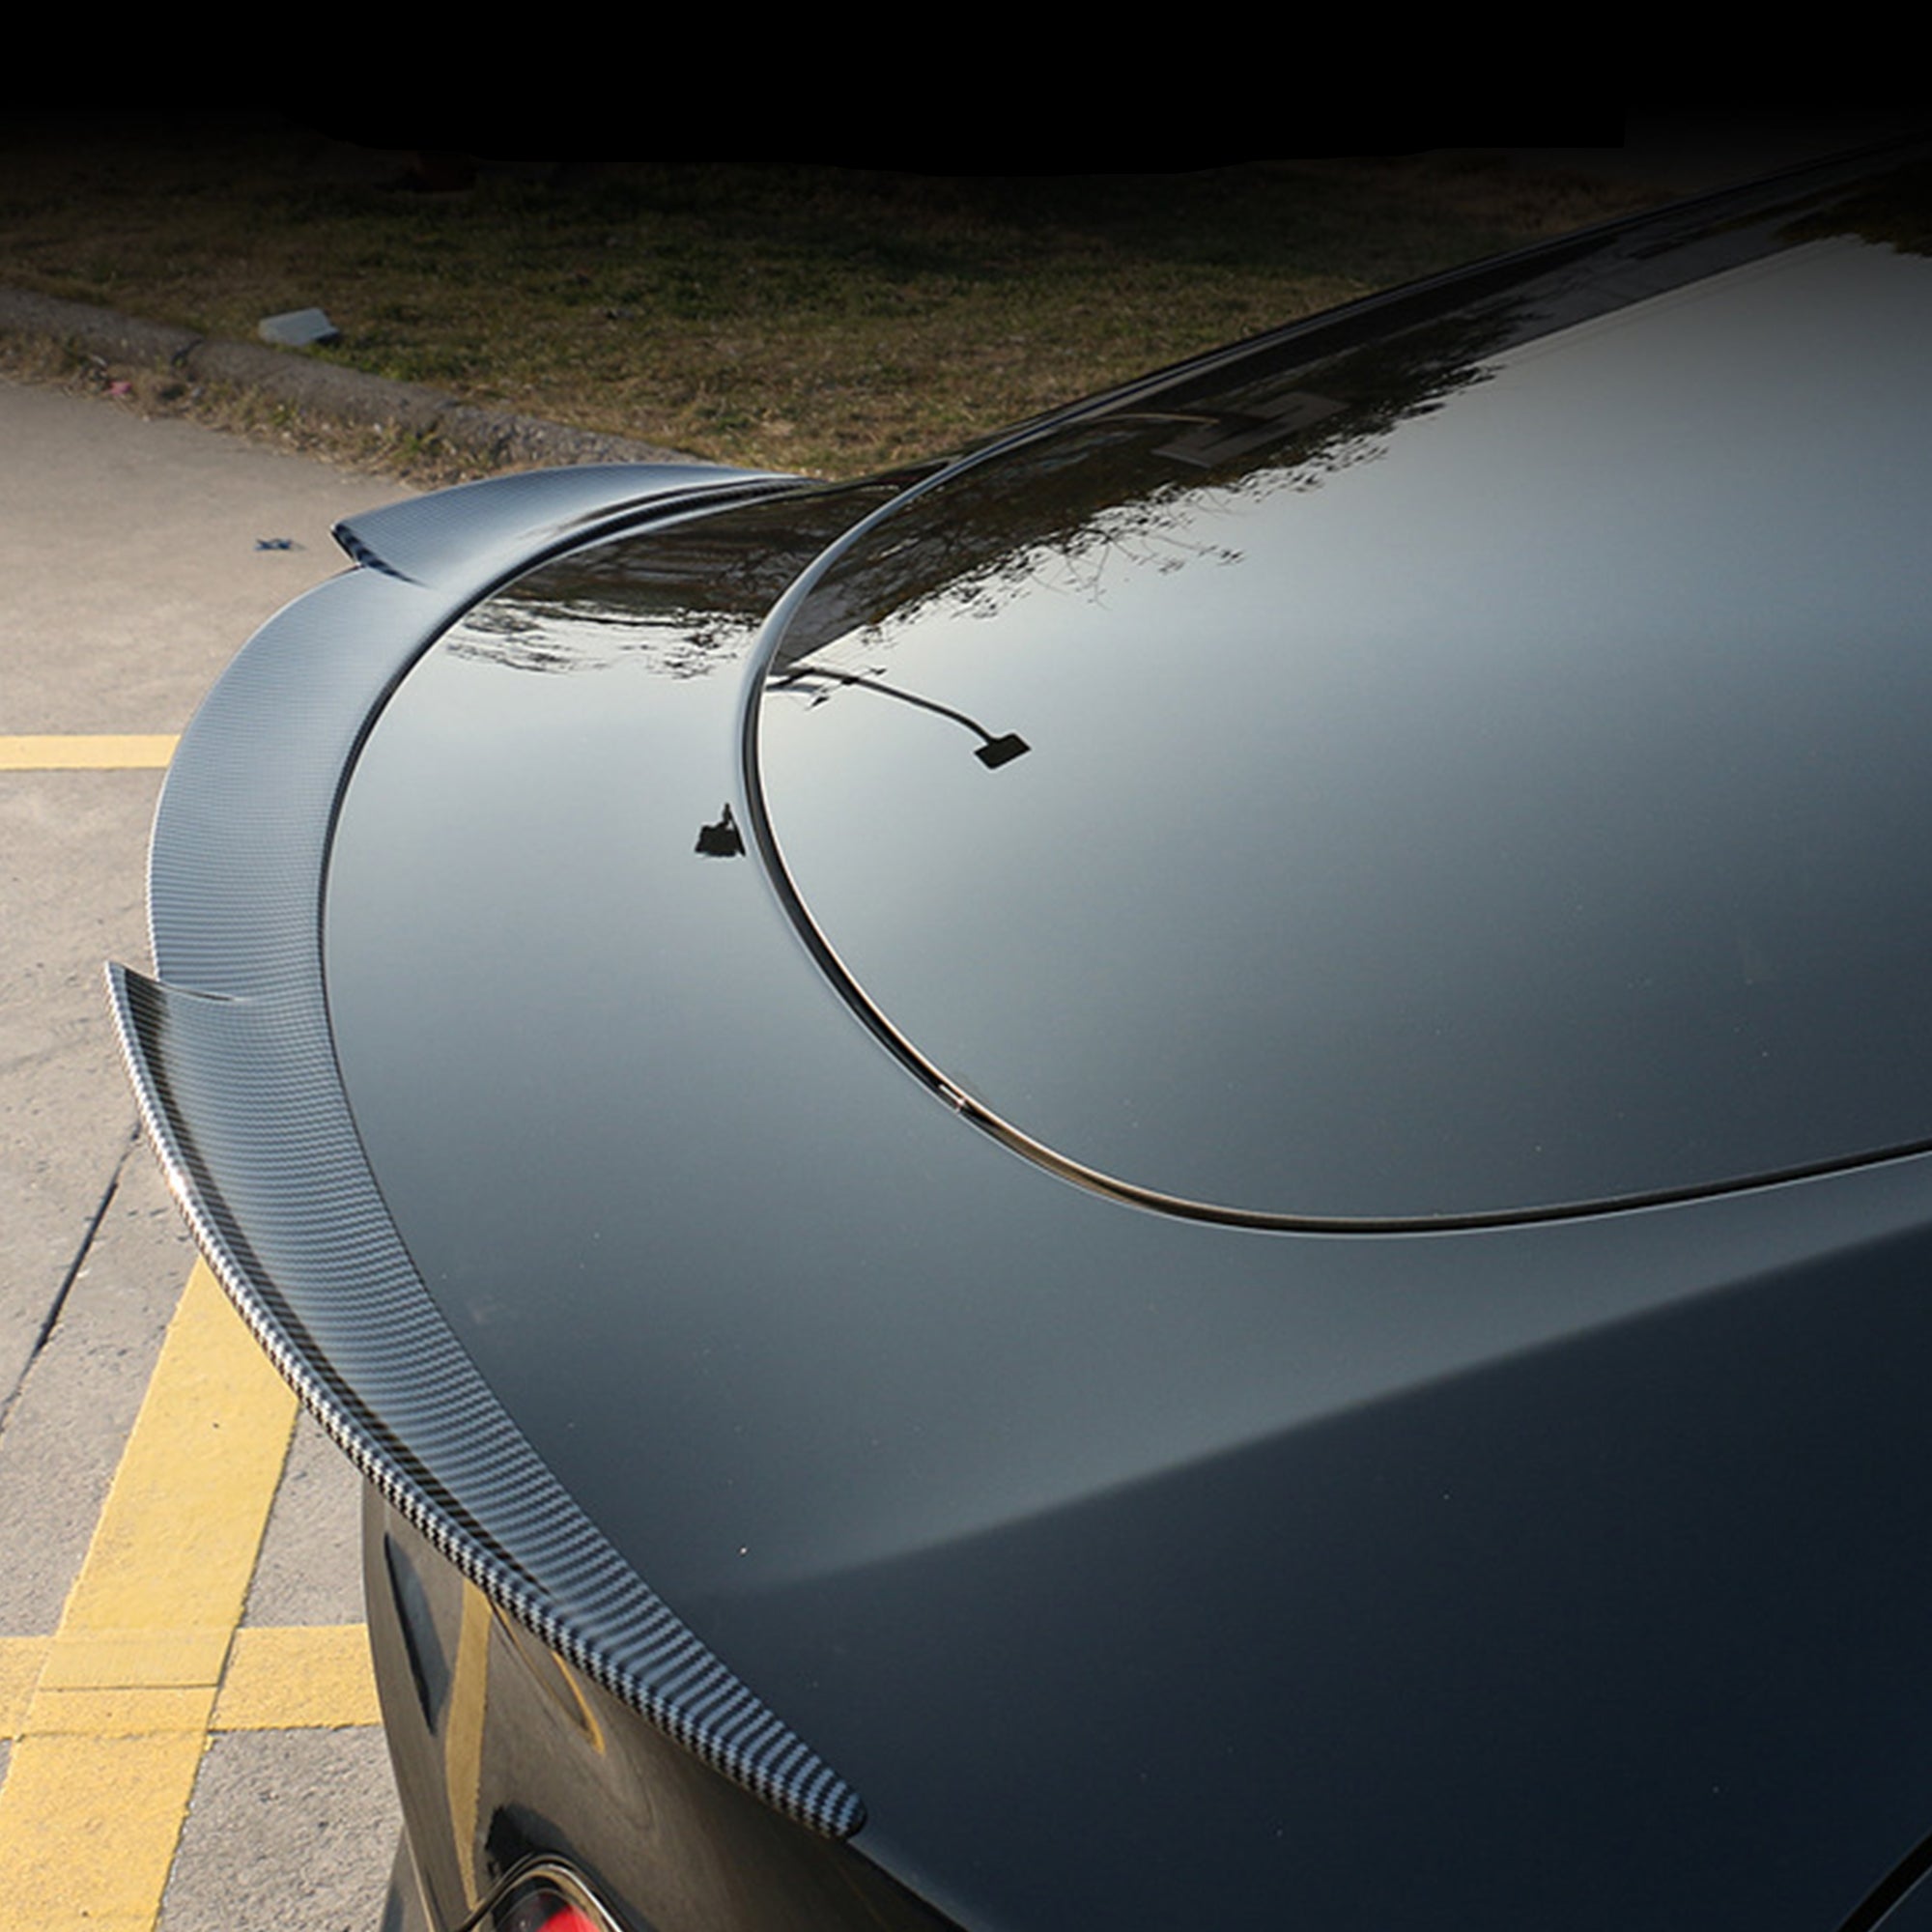 EVBASE Tesla Model 3/Y Spoiler New Real Carbon Fiber Spoiler Genuine Rear Spoiler